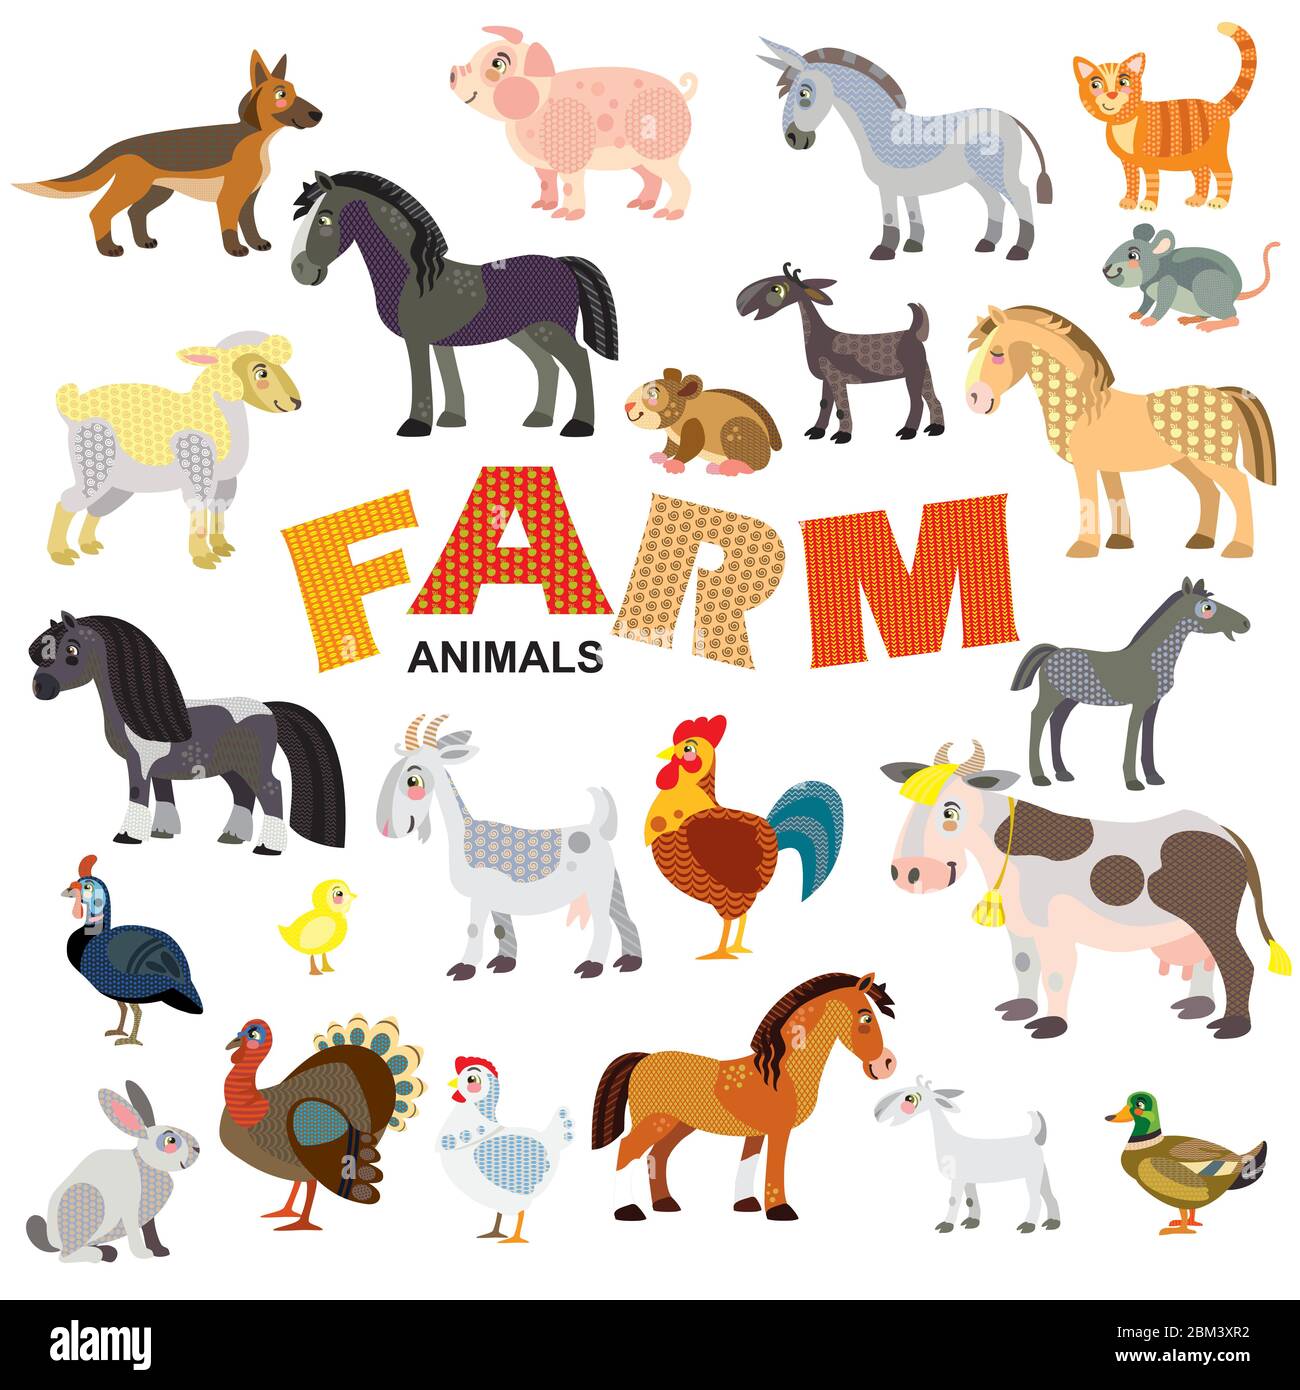 Animali da fattoria in vista frontale e laterale grande cartoon vettoriale in stile piatto isolato su sfondo bianco. Illustrazione vettoriale di animali per bambini Illustrazione Vettoriale